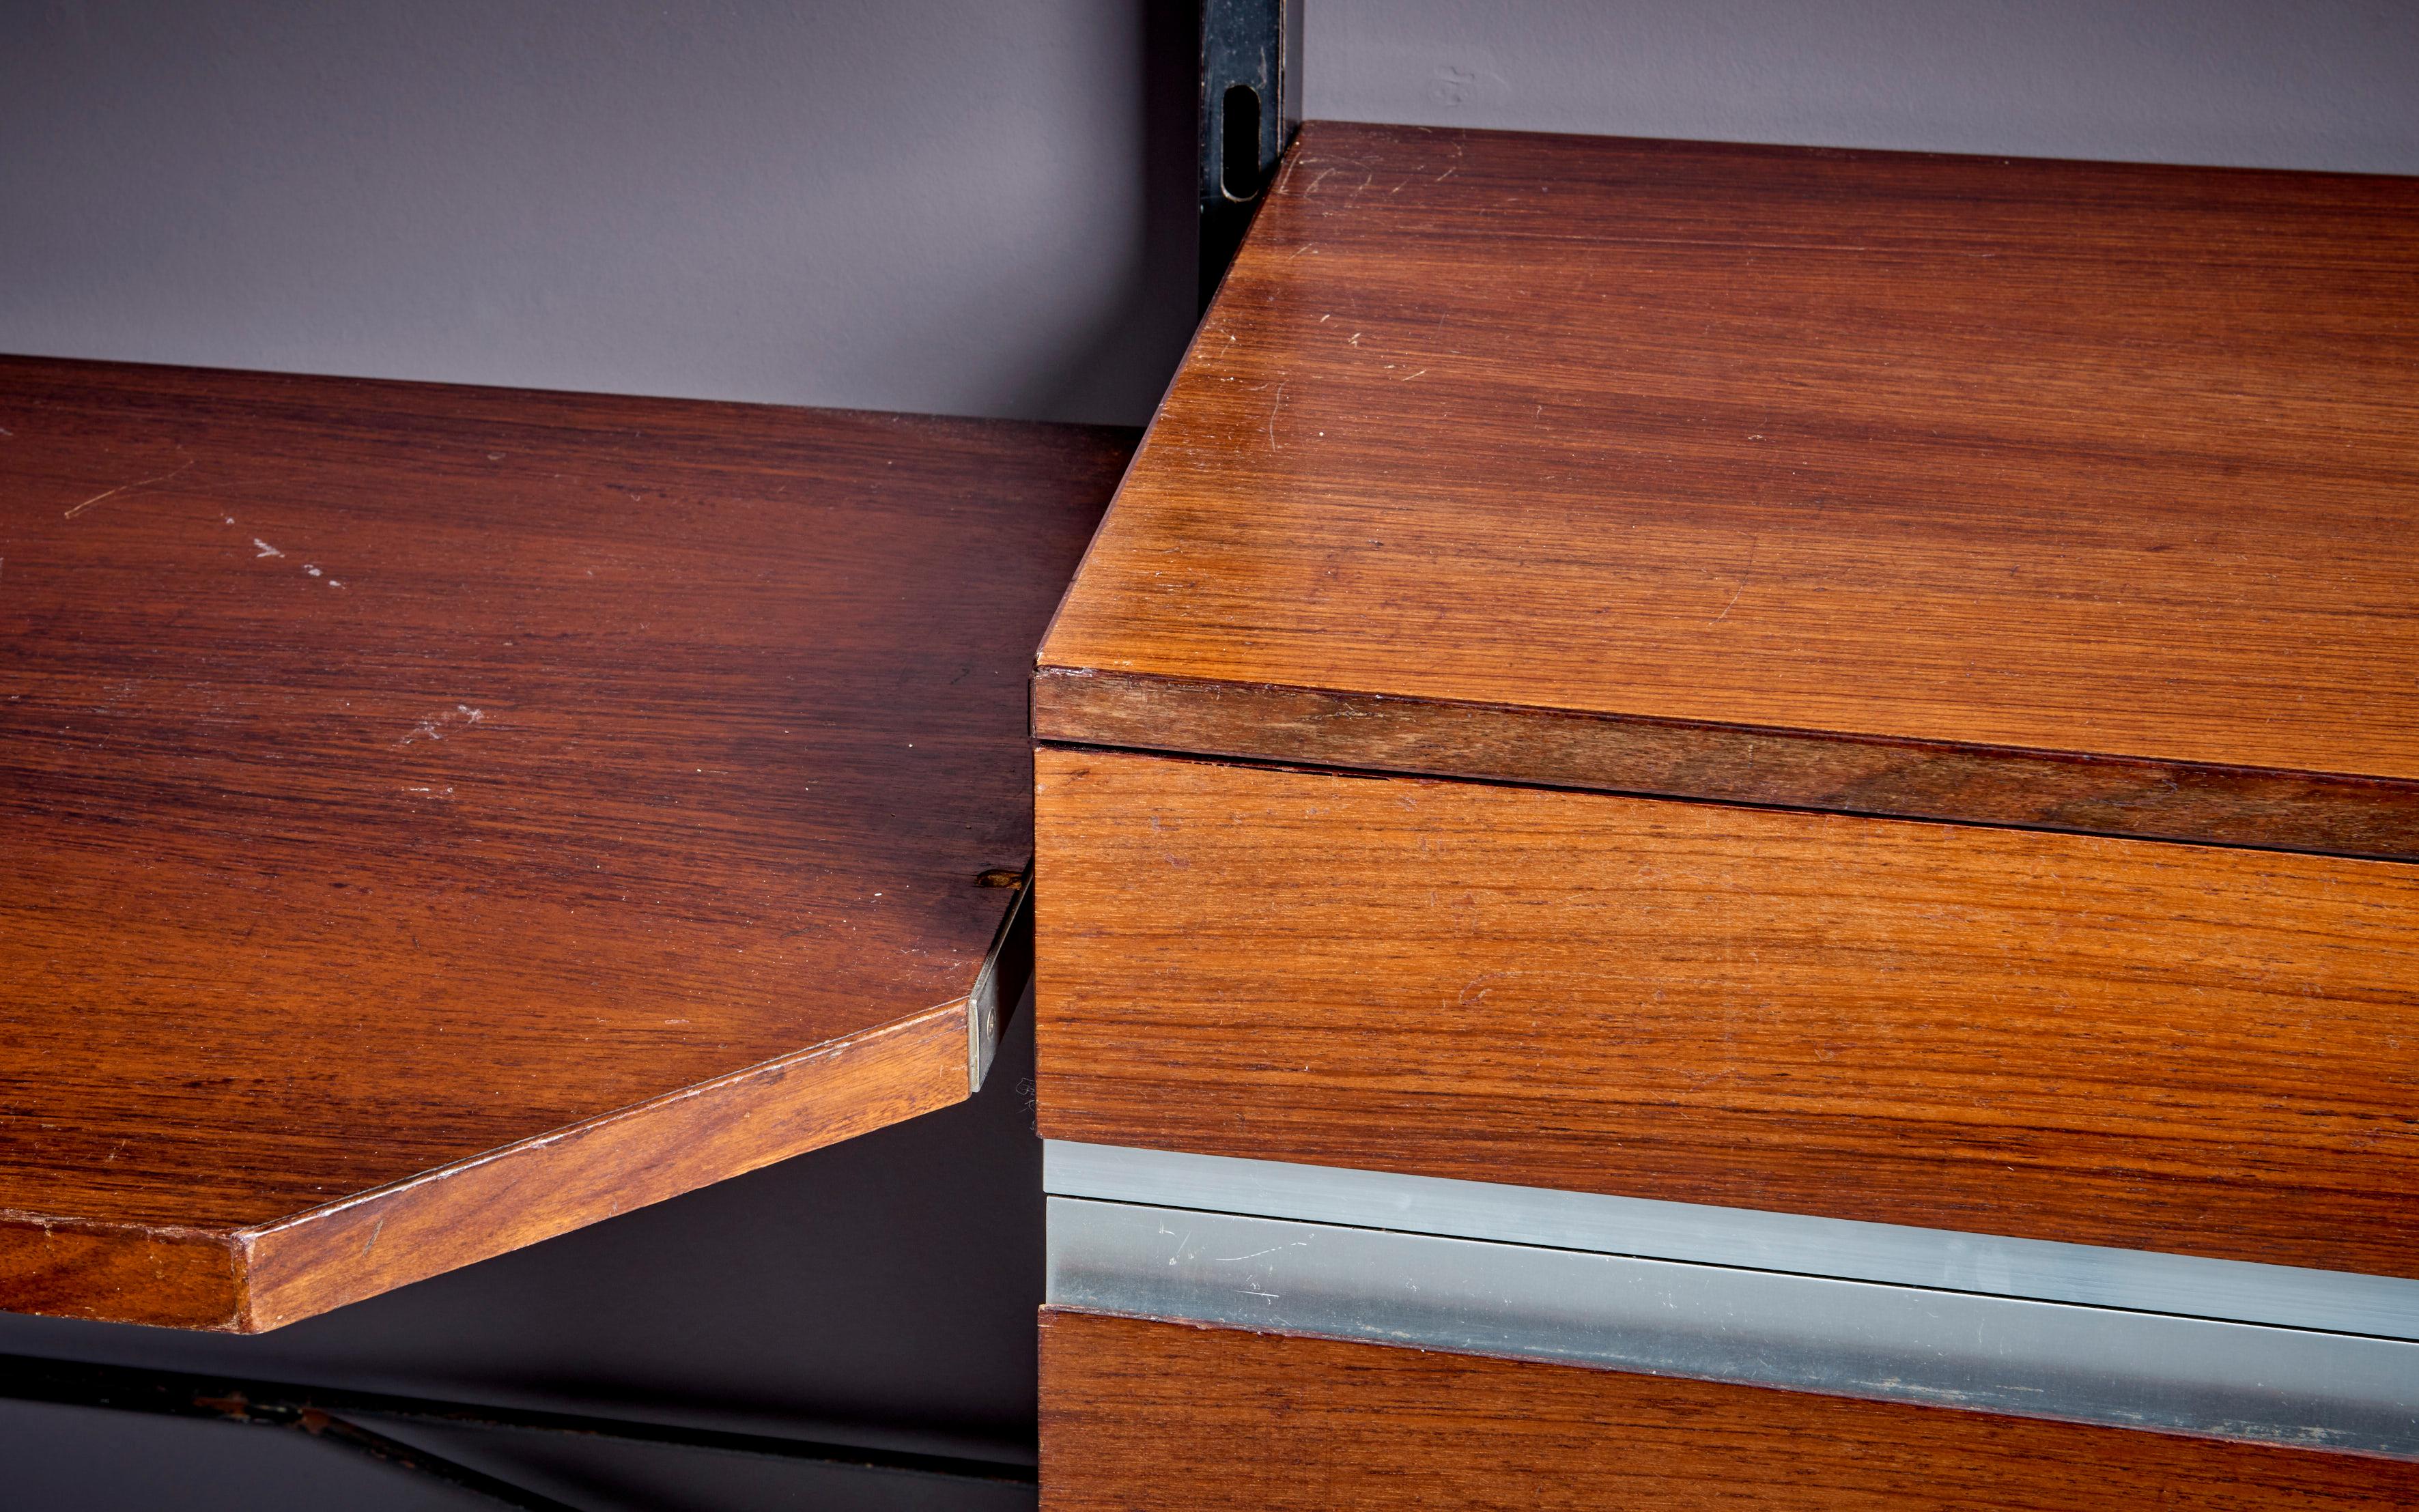 co Parisi für MIM Regal und integrierter Schreibtisch, Italien - 1960er Jahre. Gesamtzahl von vier Schubladen aus Metall und schönem Palisanderholz. Die Position der Einlegeböden ist verstellbar. Ico Parisi (1916-1996) war ein italienischer